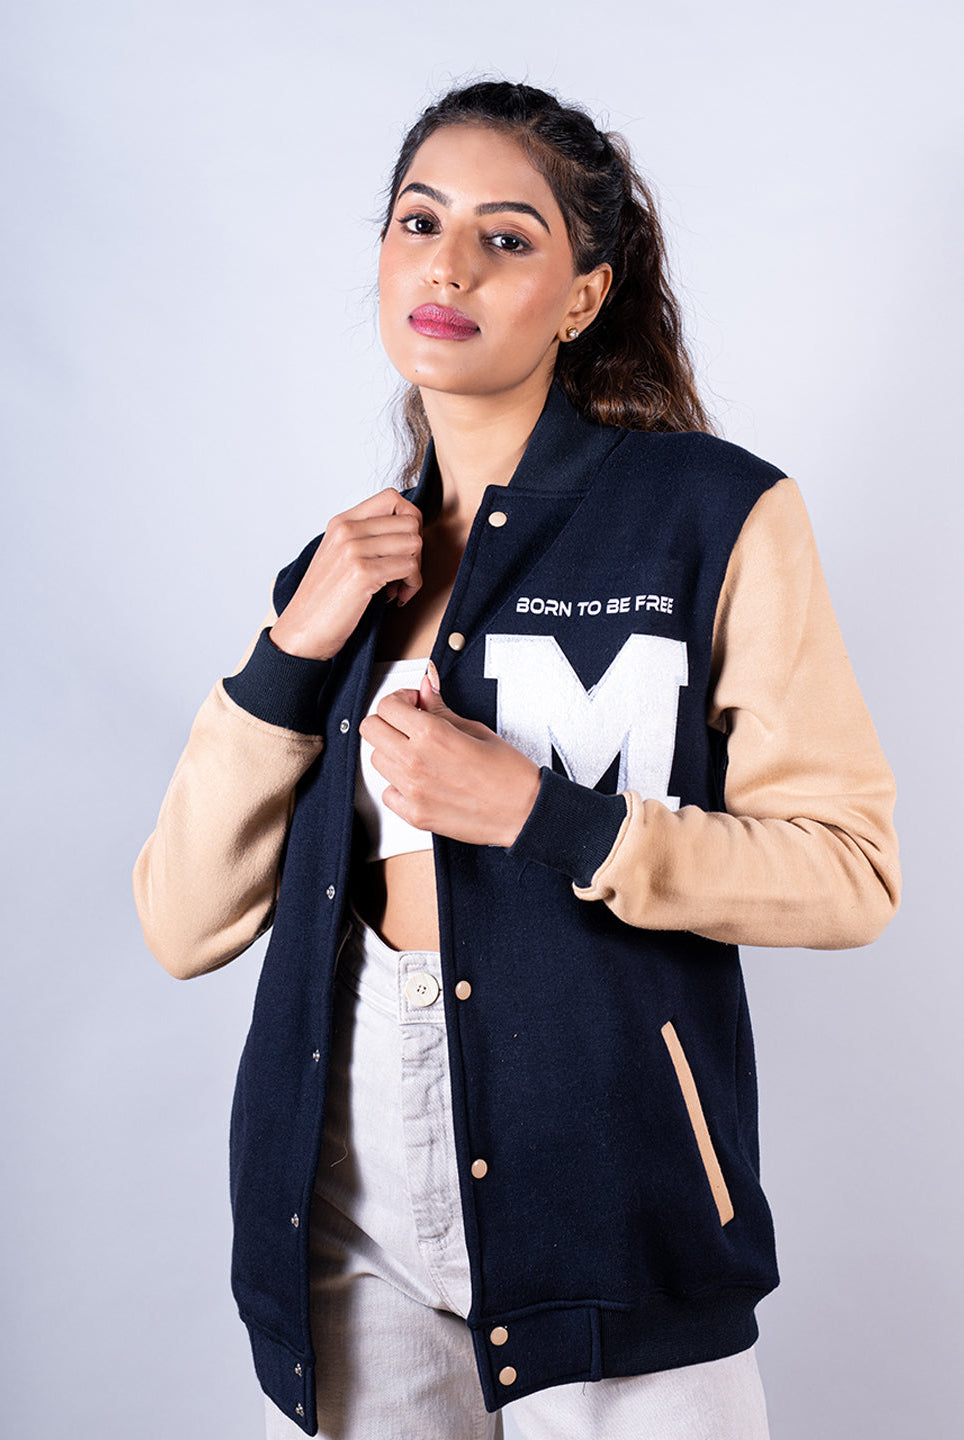 women jackets online